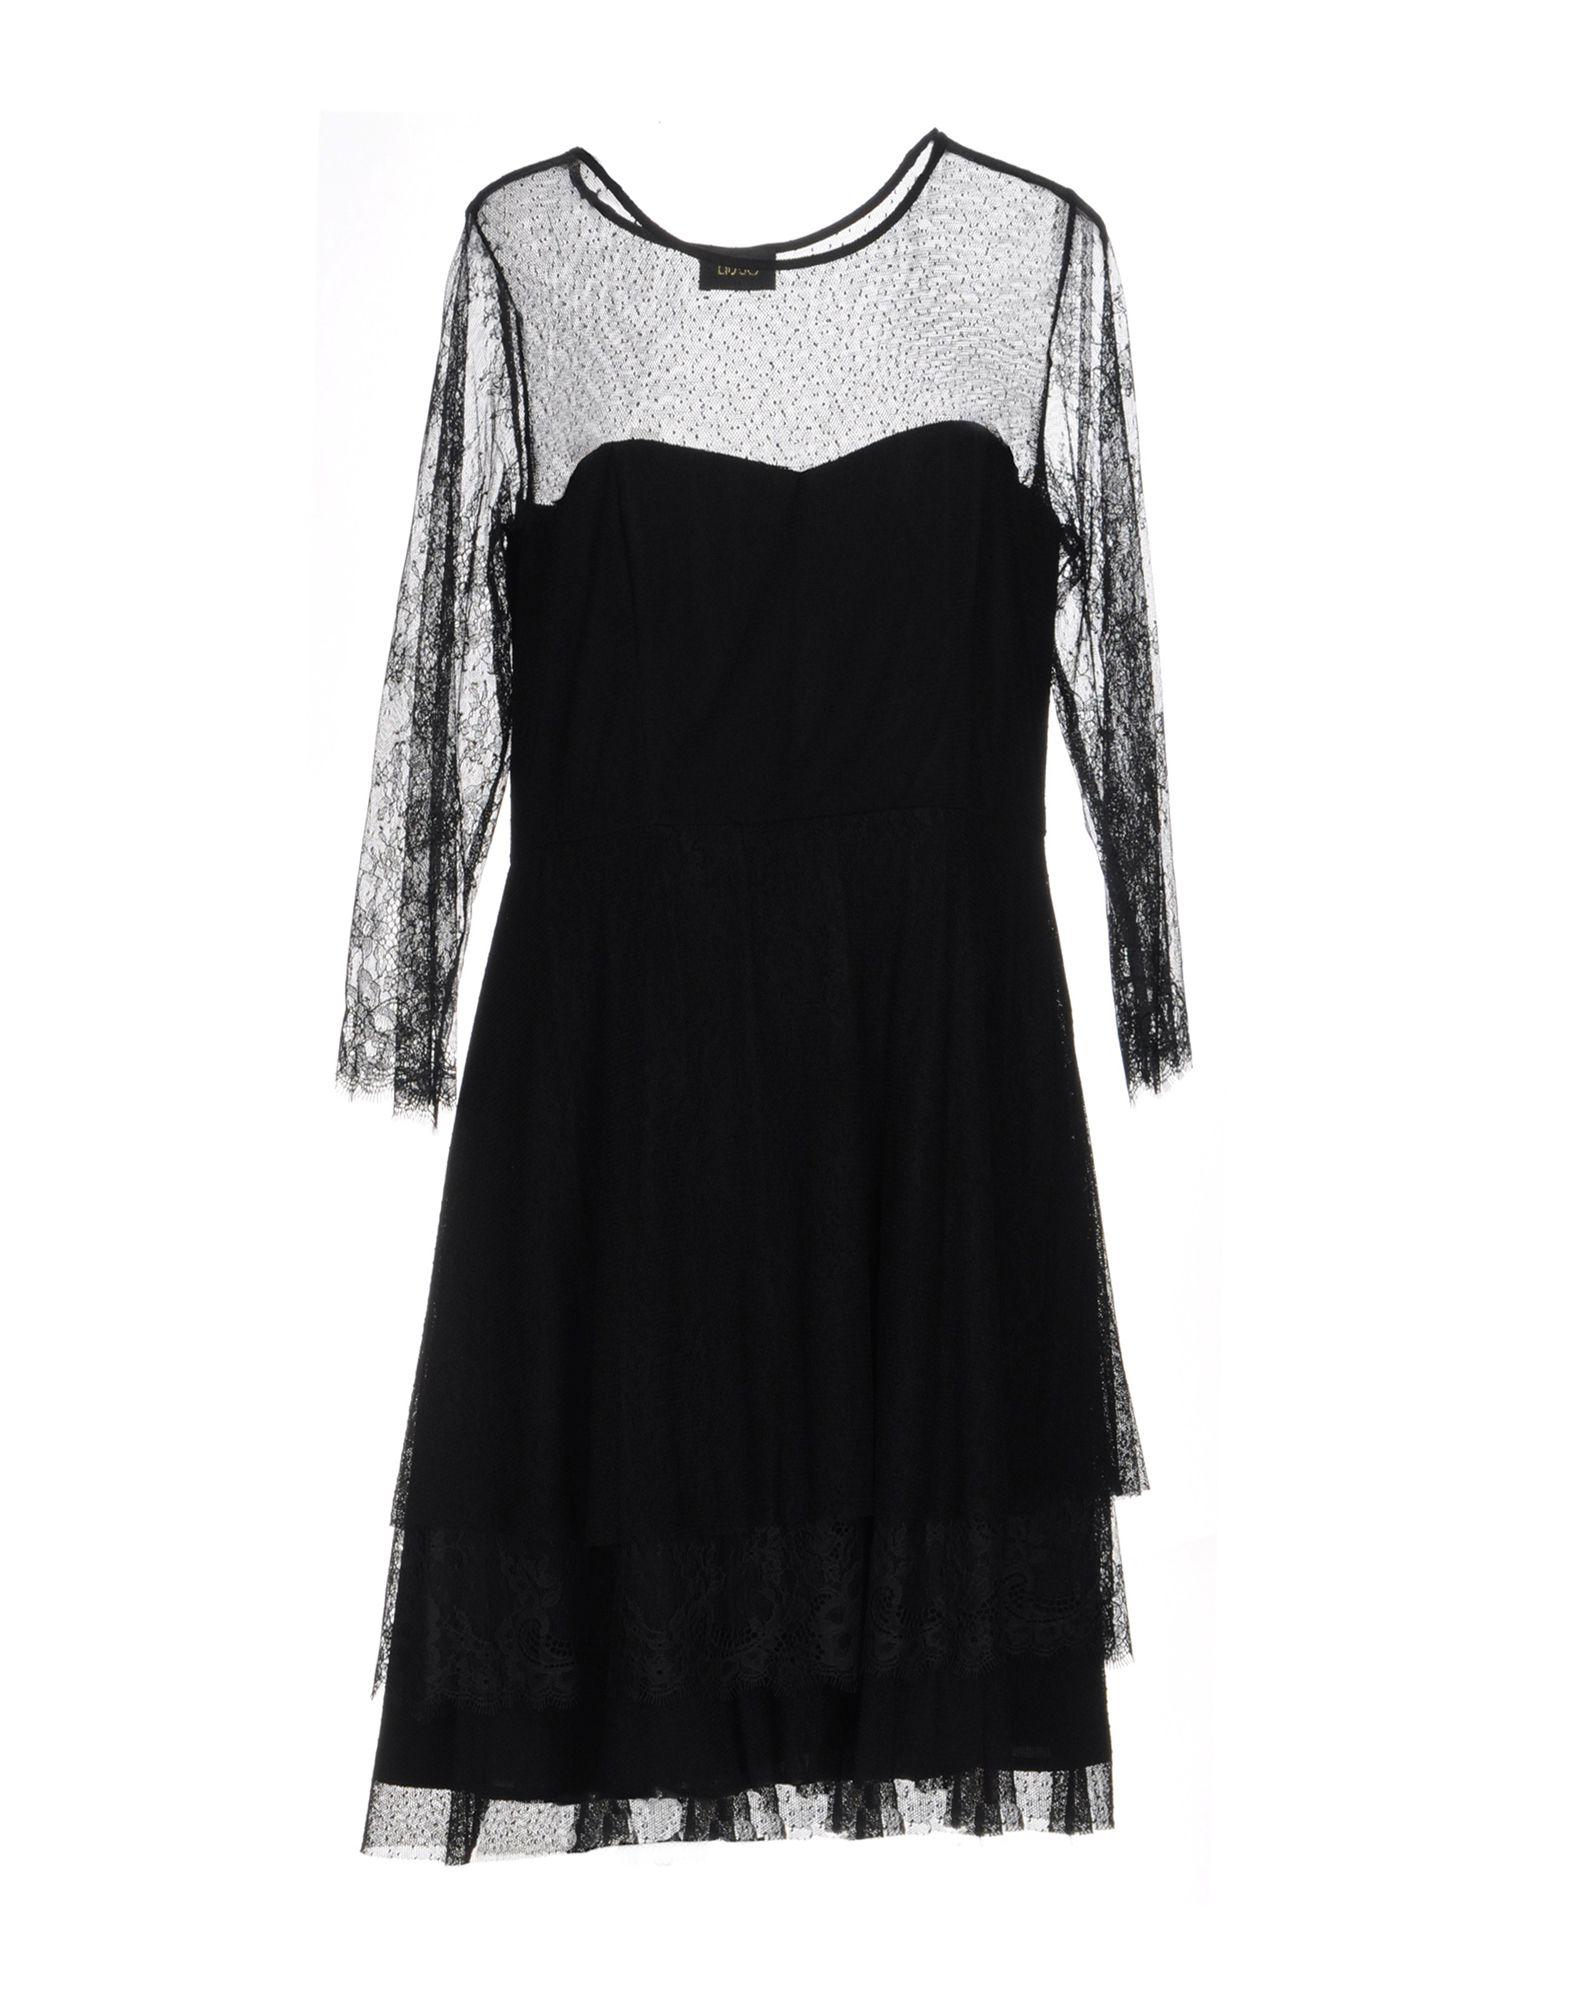 Liu Jo Lace Short Dress in Black - Lyst